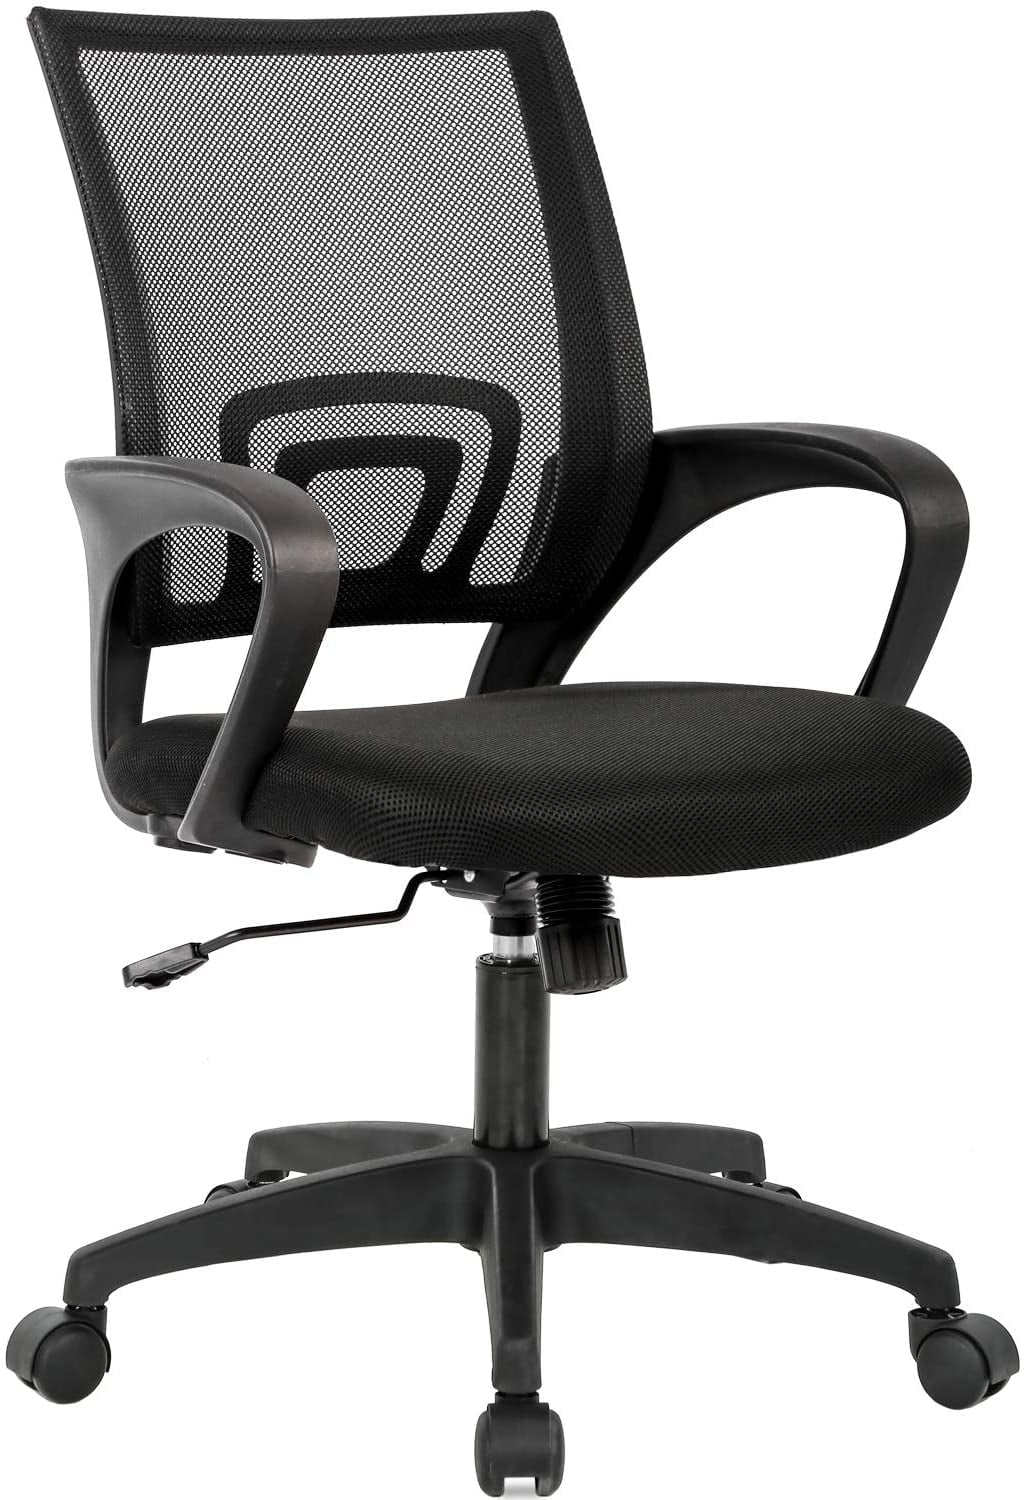 Ergonomic Office Chair Mesh Cheap Desk Chair Task Computer Chair Lumbar Support 